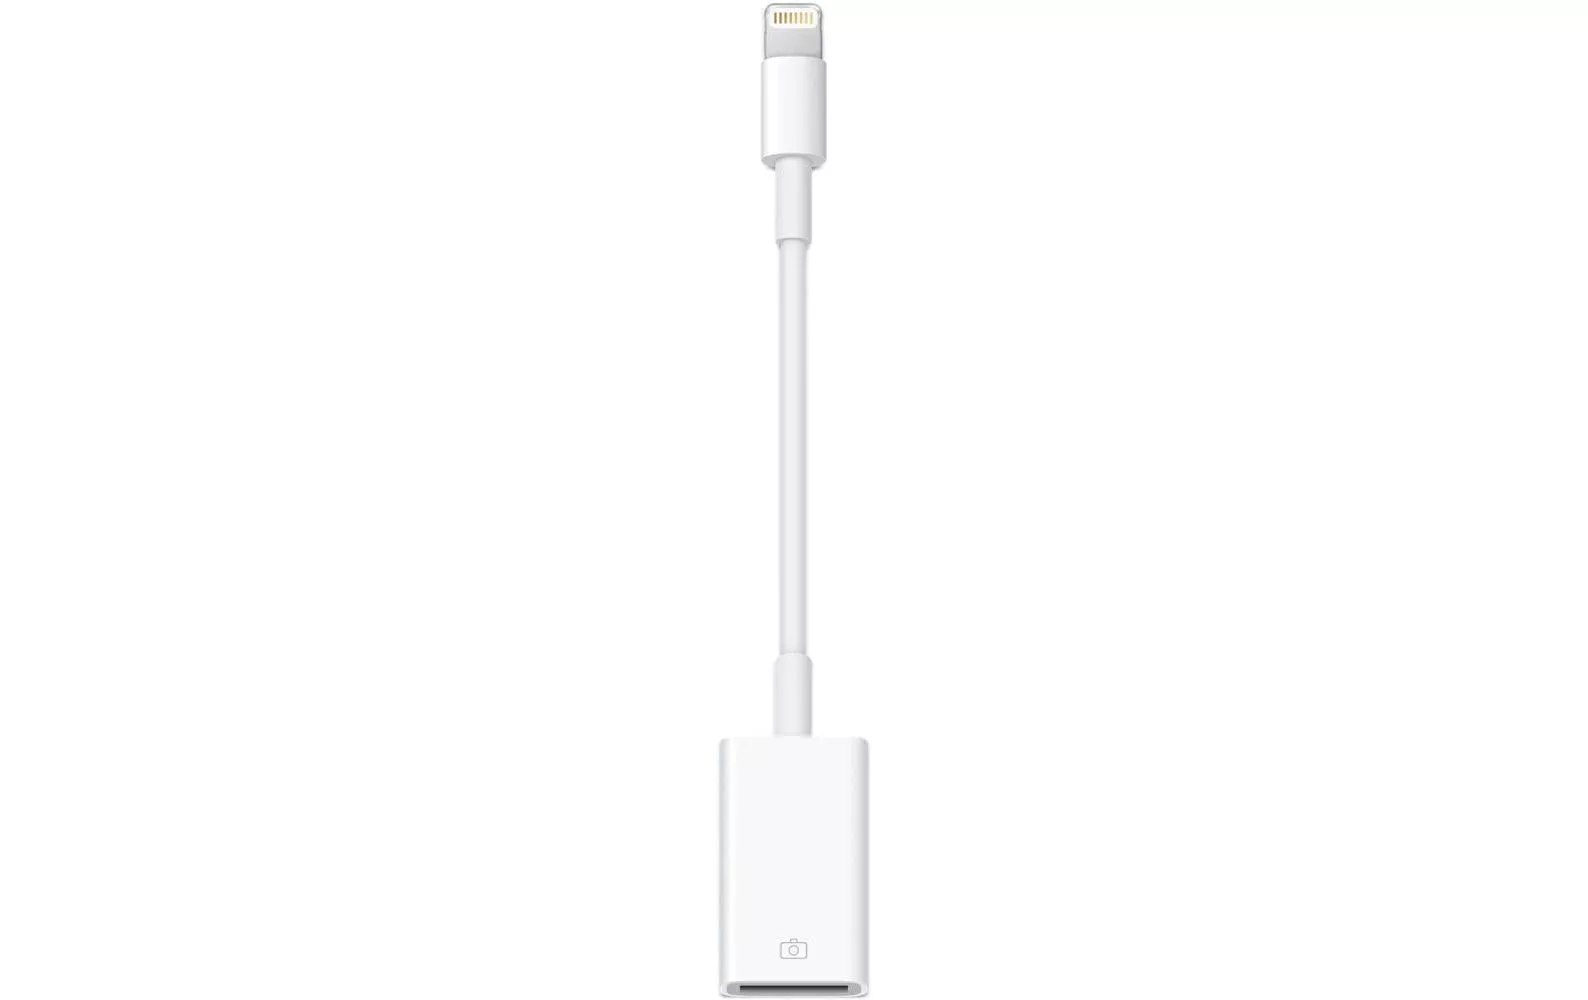 Адаптер apple lightning usb. Apple Lightning to USB Camera Adapter. Apple Lightning to USB 3 Camera Adapter. Адаптер Apple Lightning-USB 3 Camera белый (mk0w2zm/a).